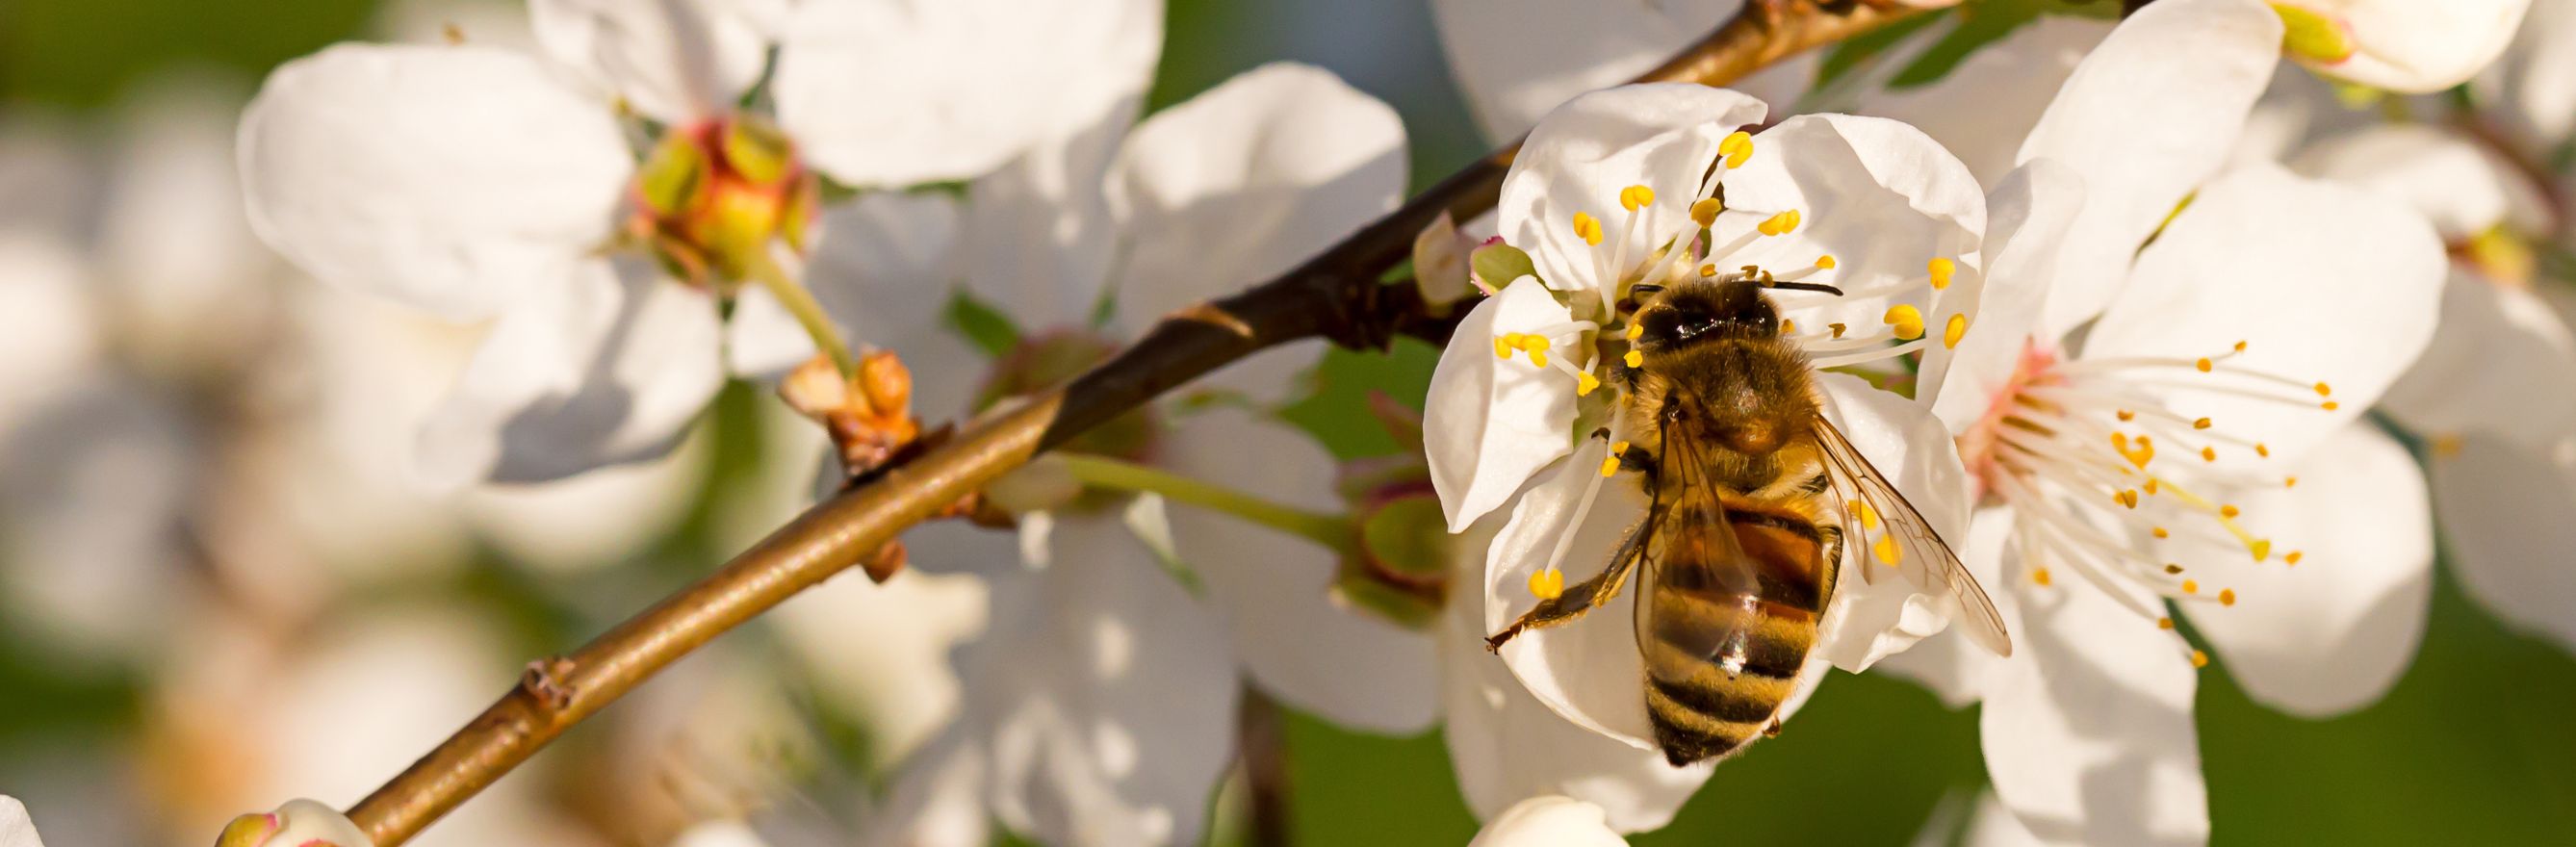 photo d'une abeille sur une fleur.